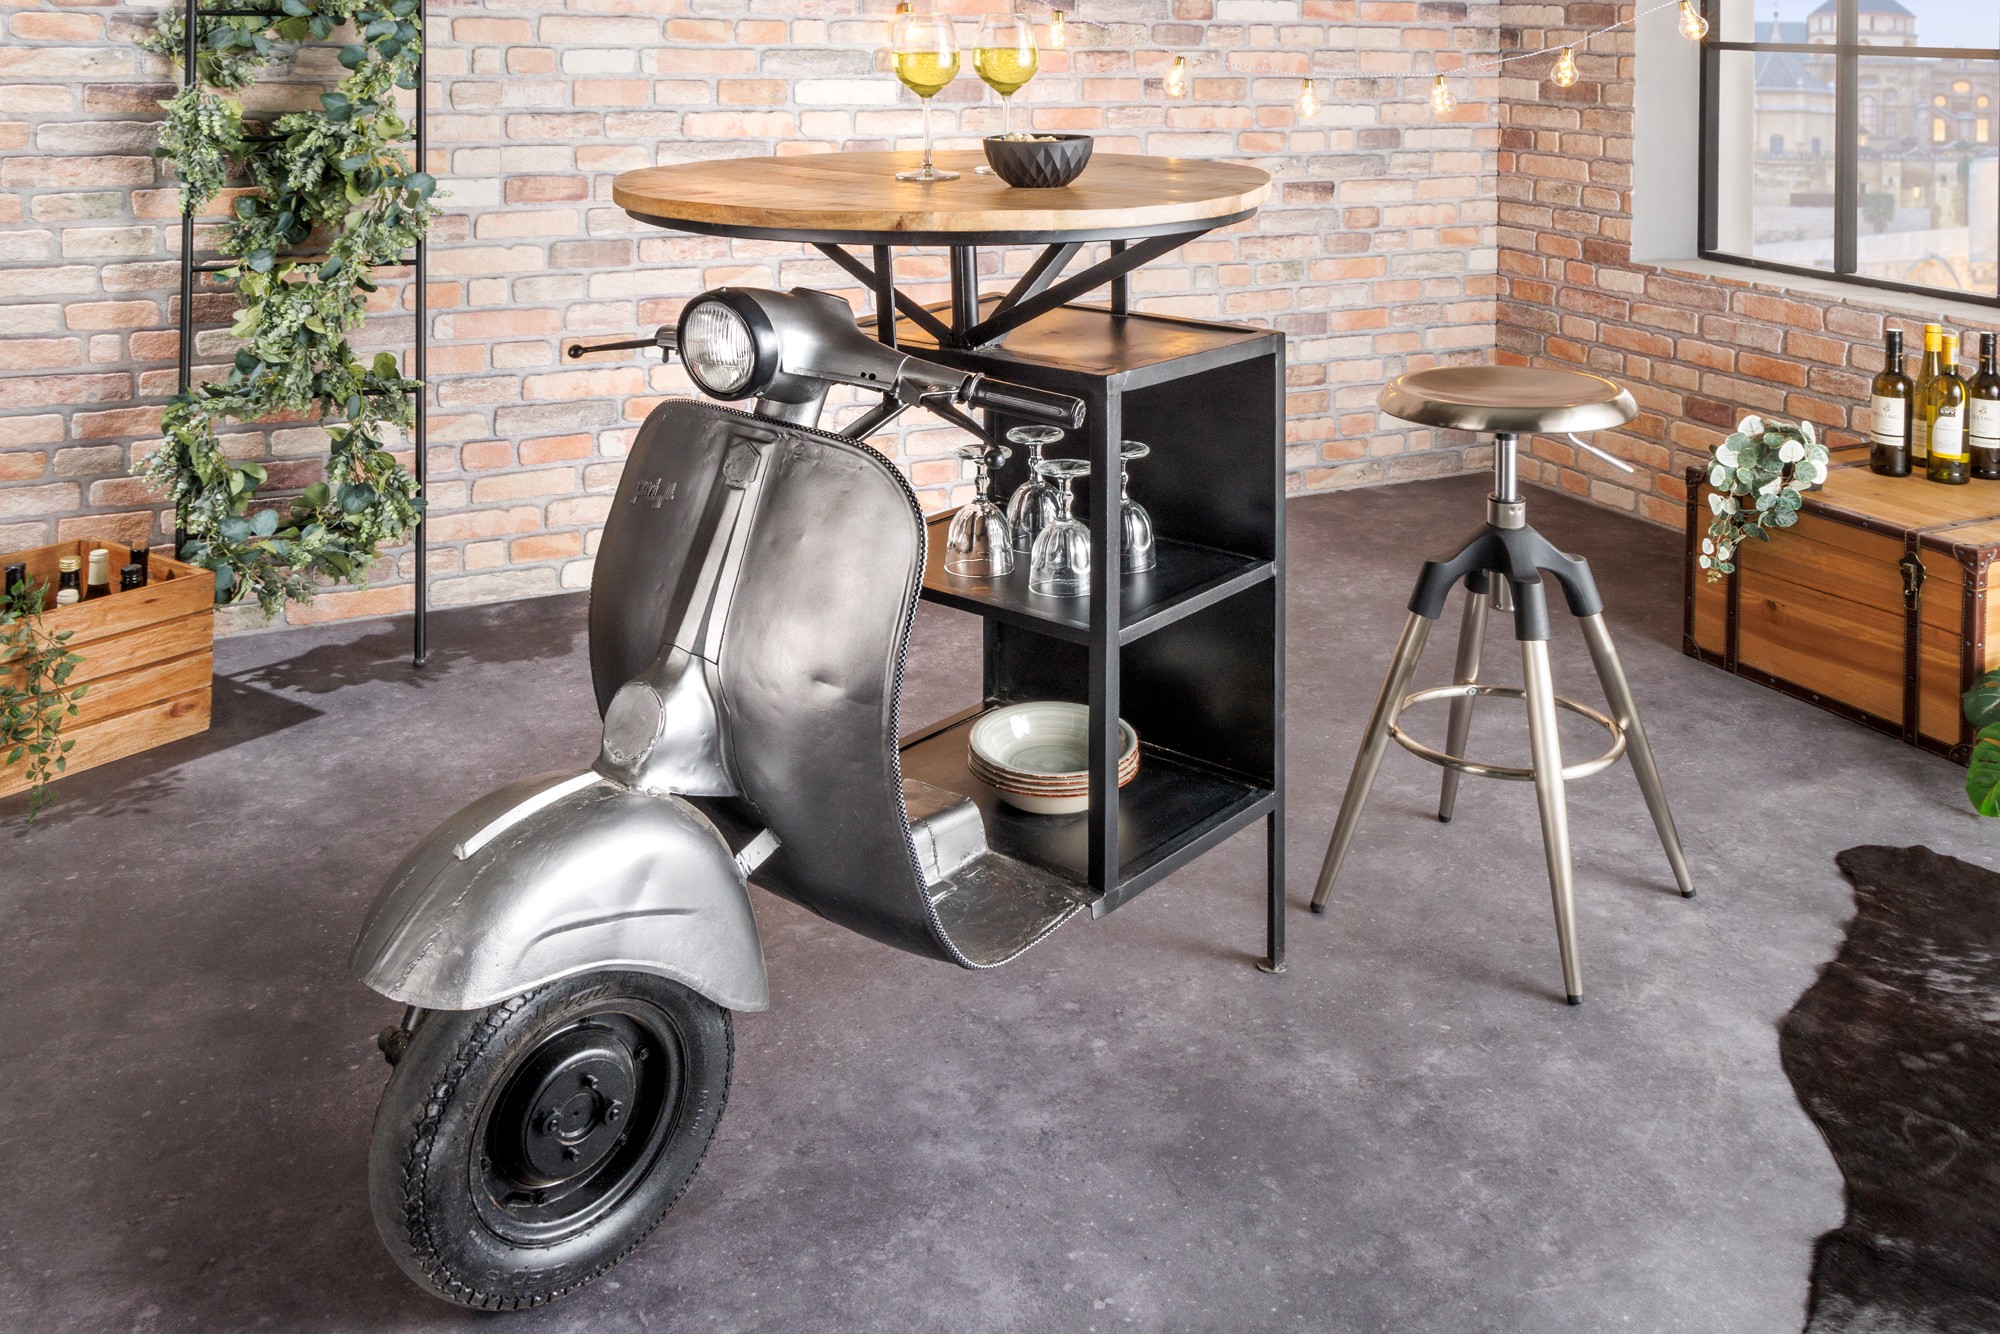 Estila Industriální barový stůl Scooter s designem motorky a policemi a vrchní deskou z mangového dřeva stříbrná 116 cm